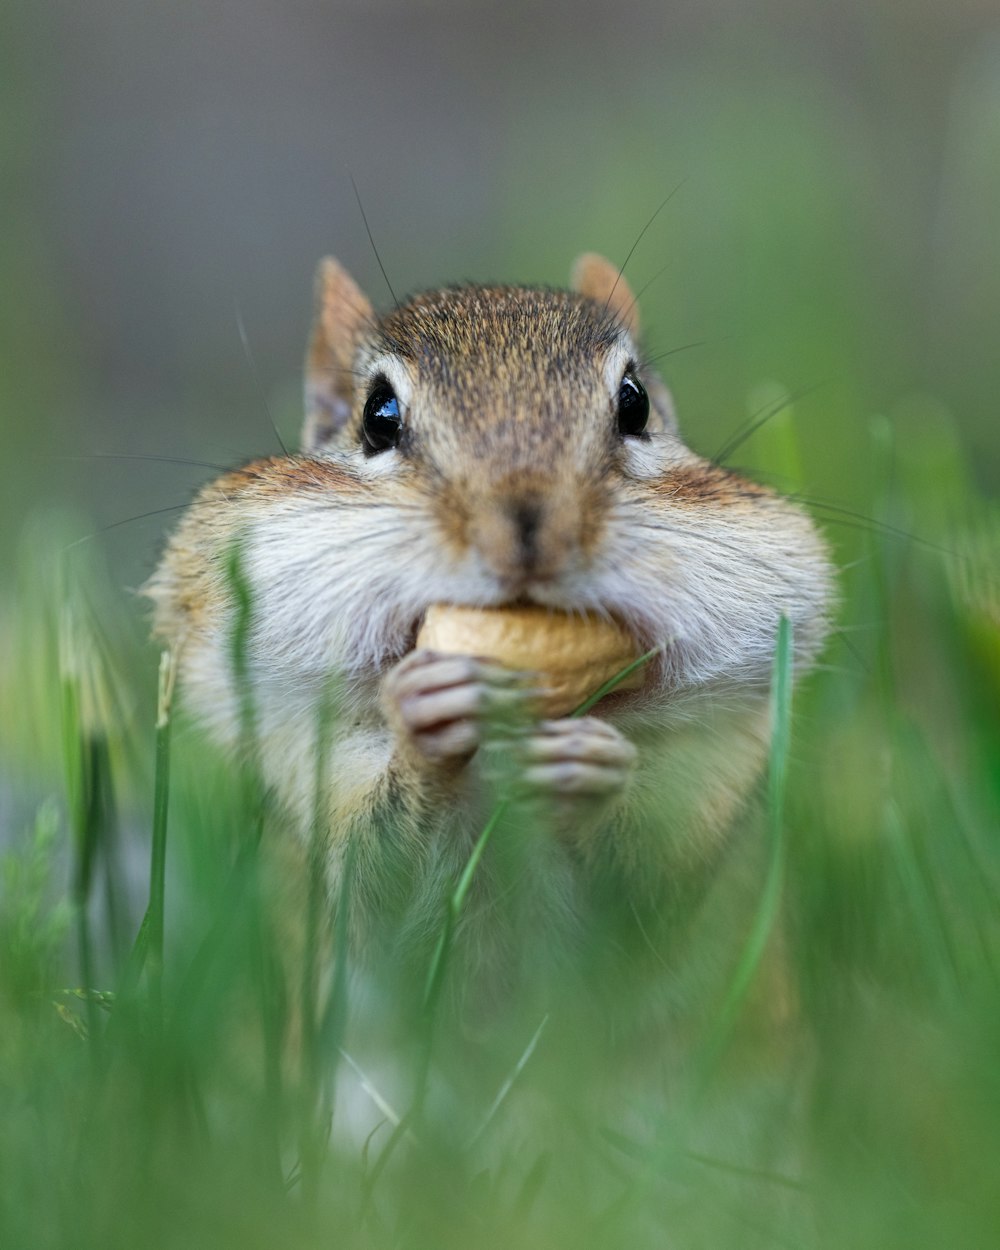 a squirrel eating a leaf